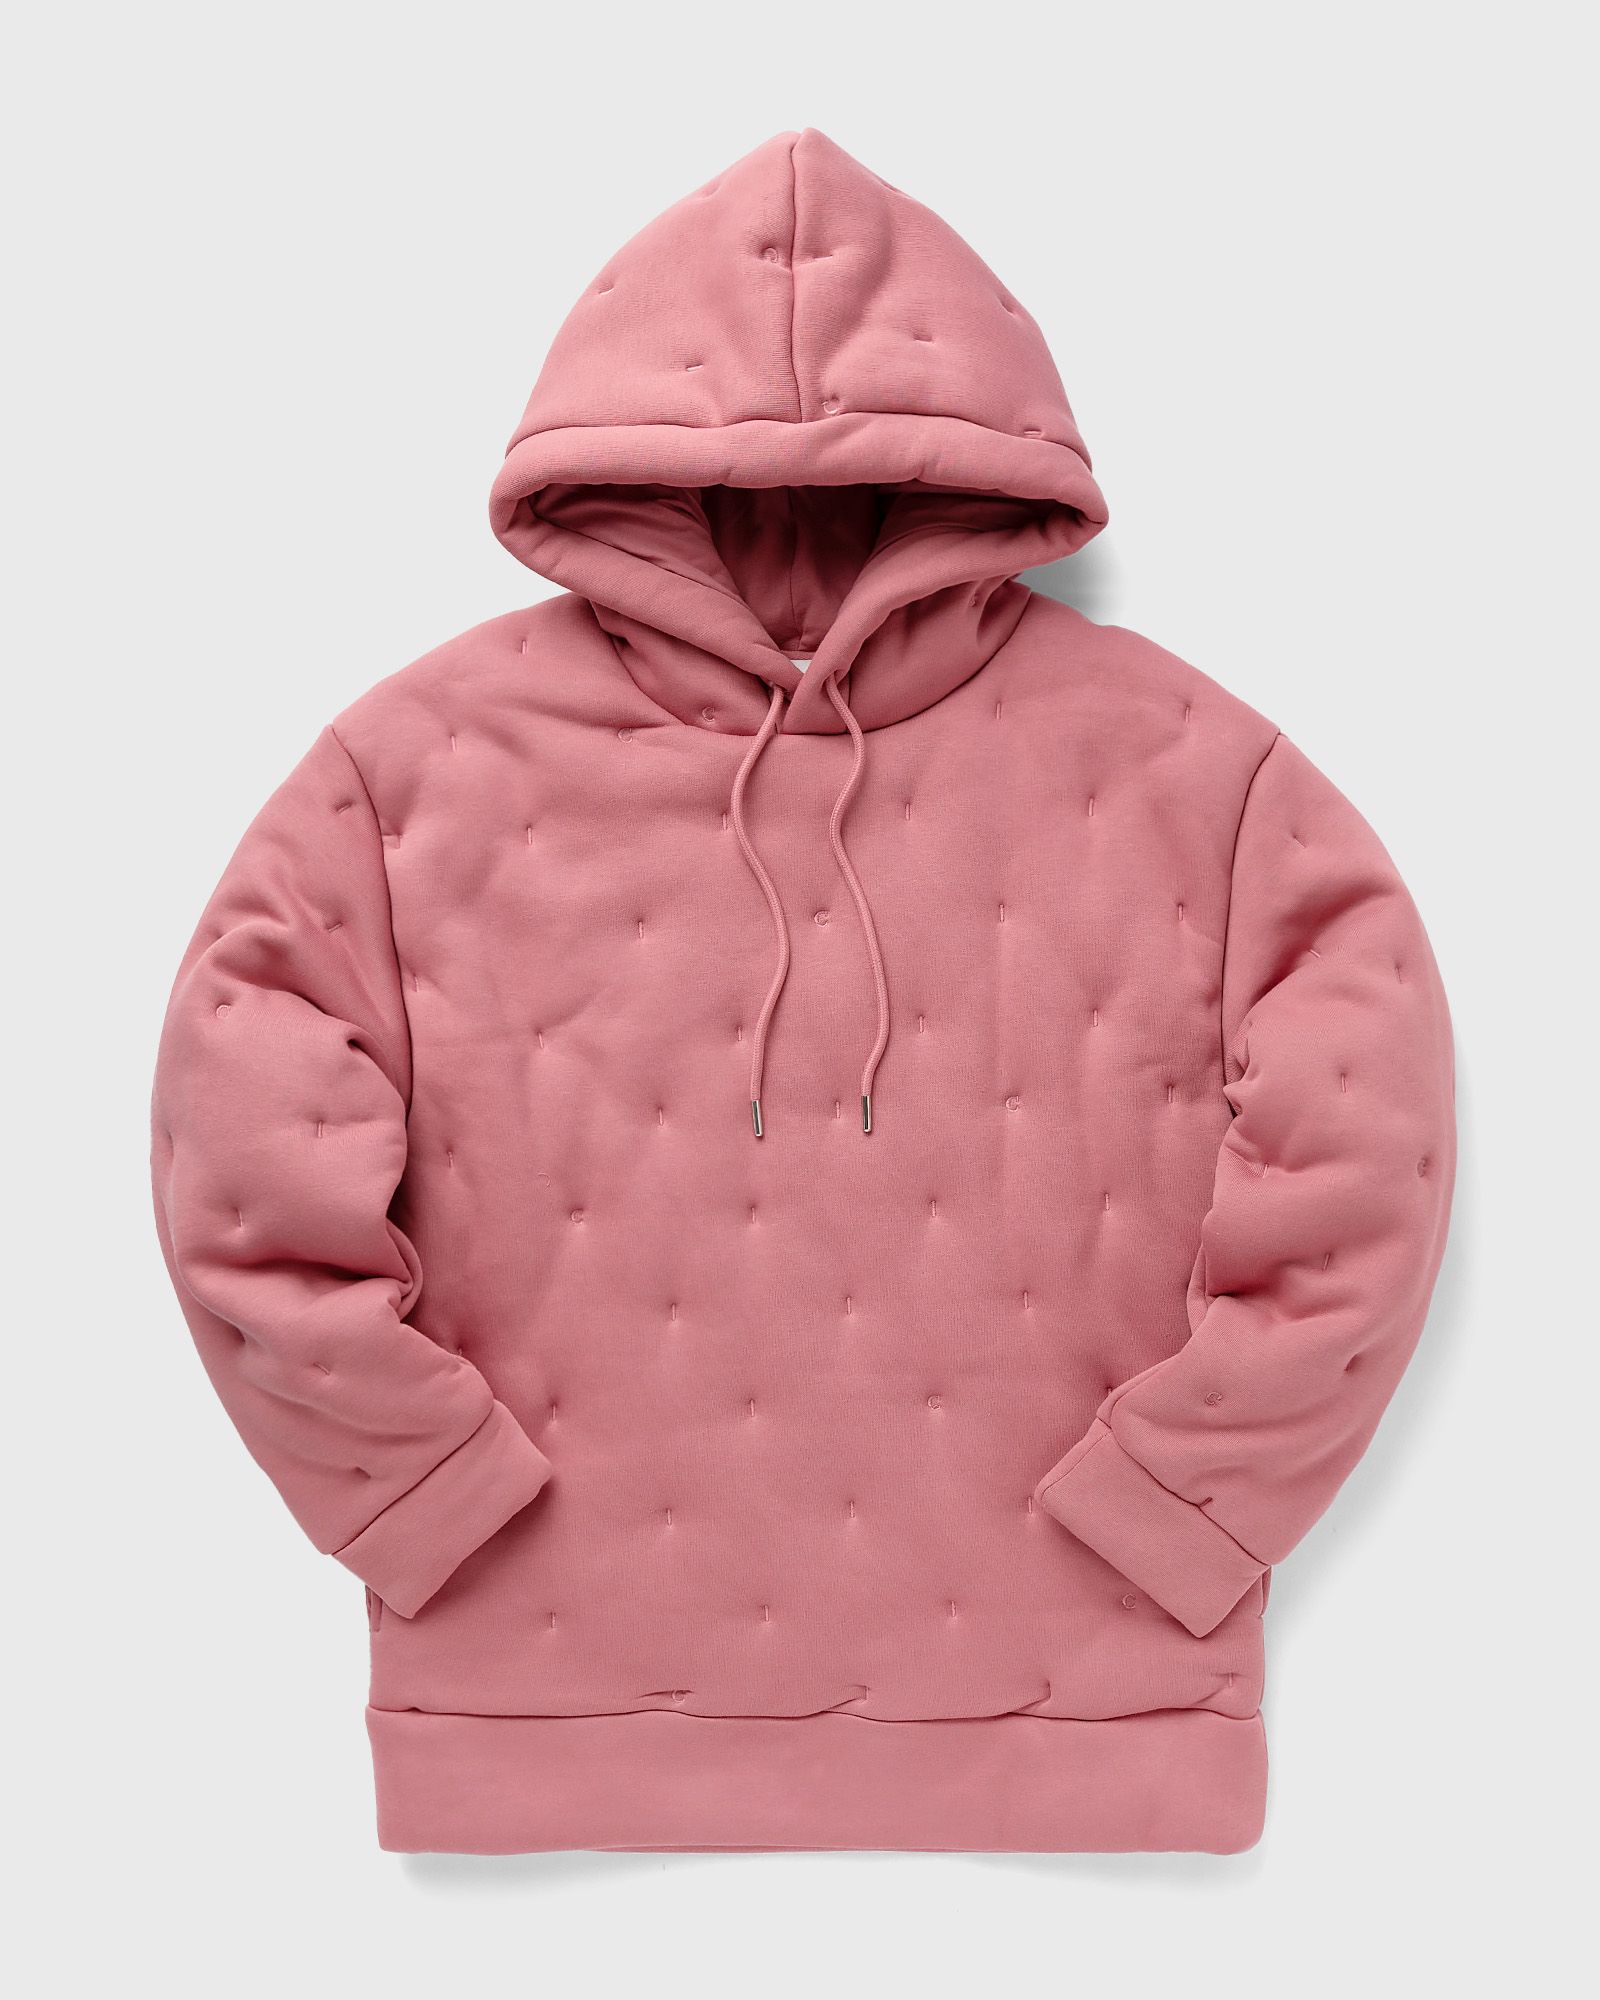 CLOSED - hoodie men hoodies pink in größe:l